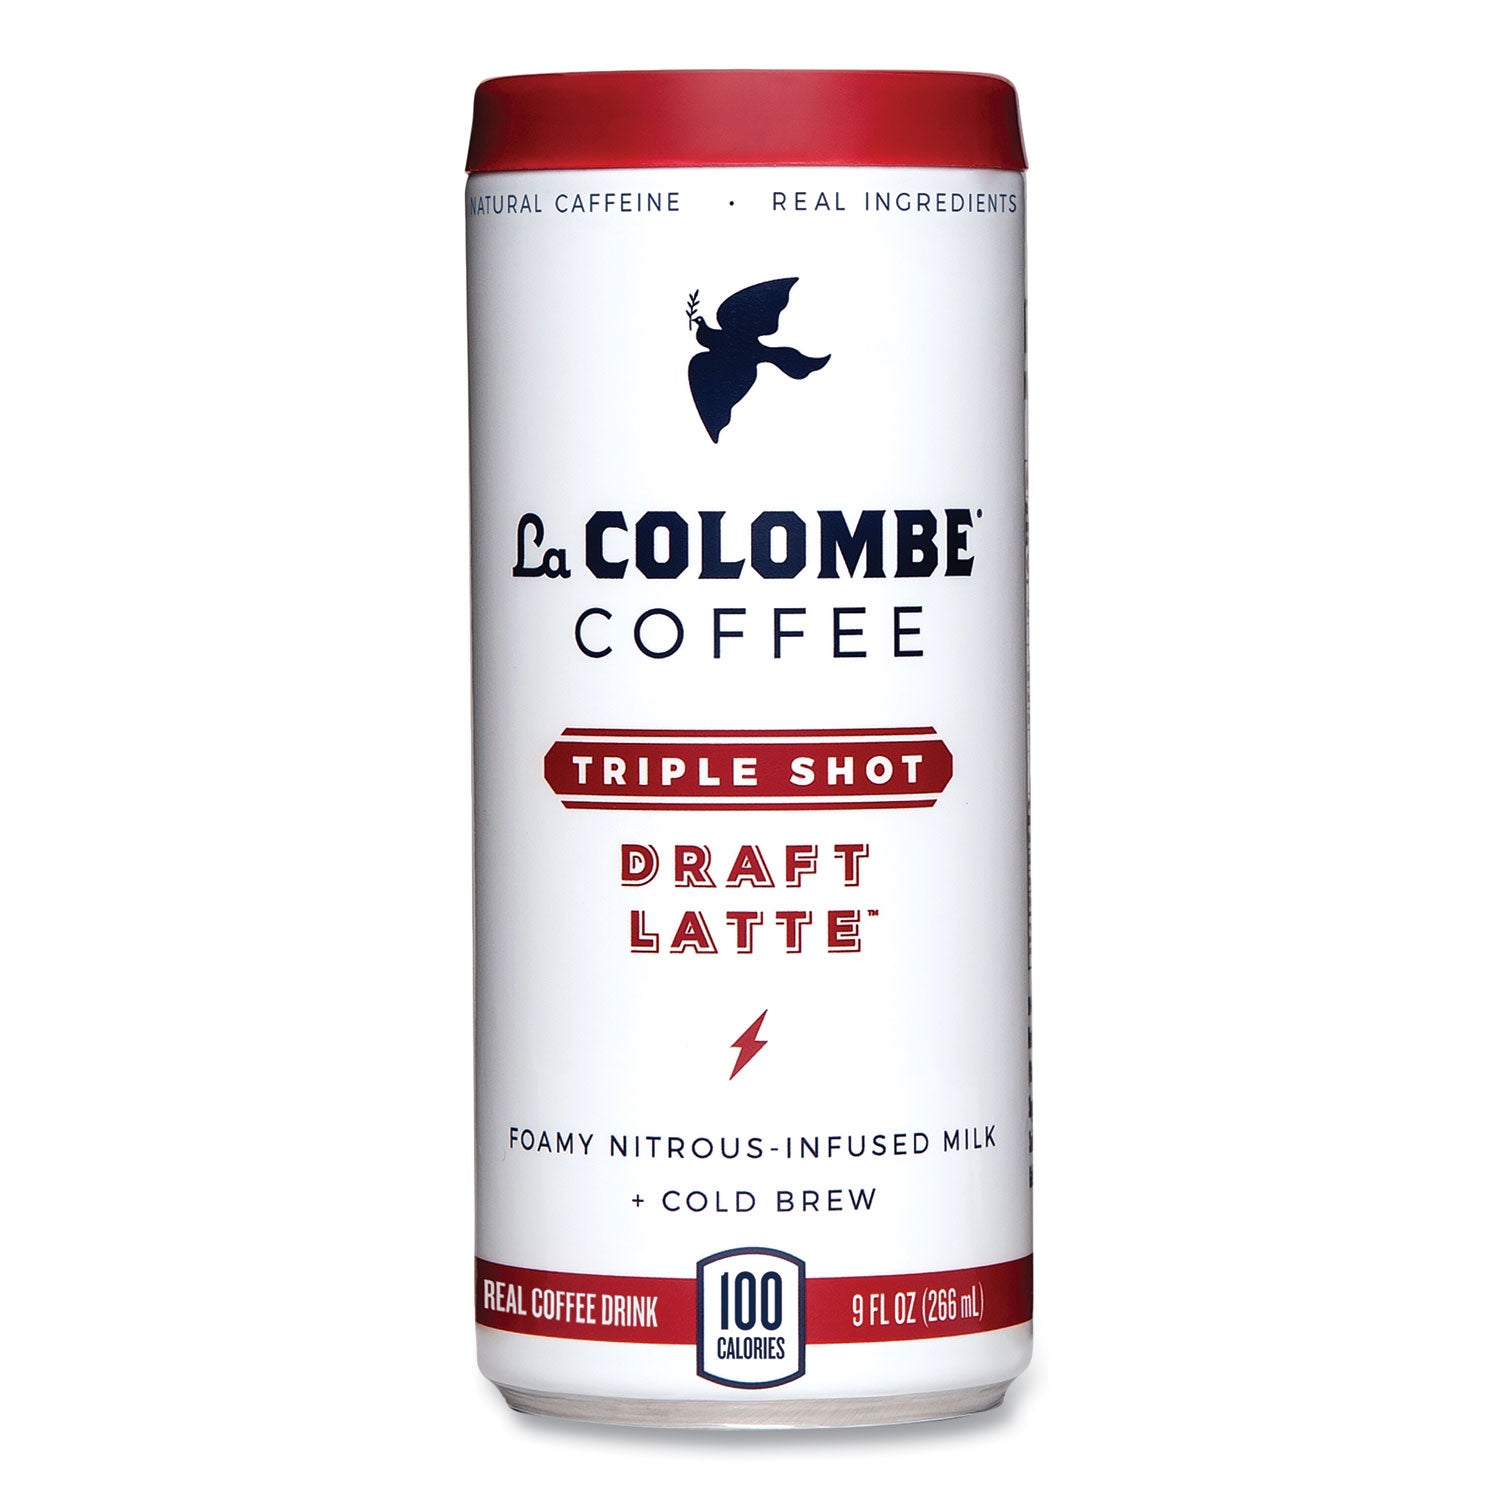 cold-brew-draft-latte-triple-shot-9-oz-can-12-carton_lallct00003 - 2